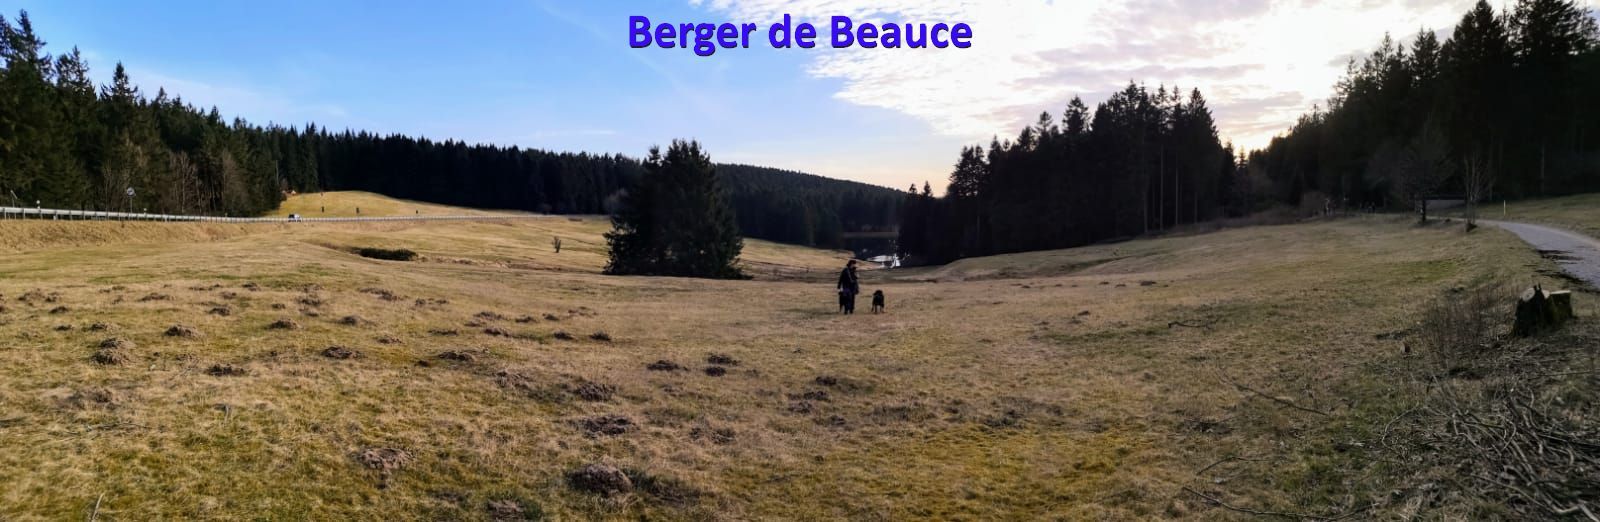 Berger de Beauce